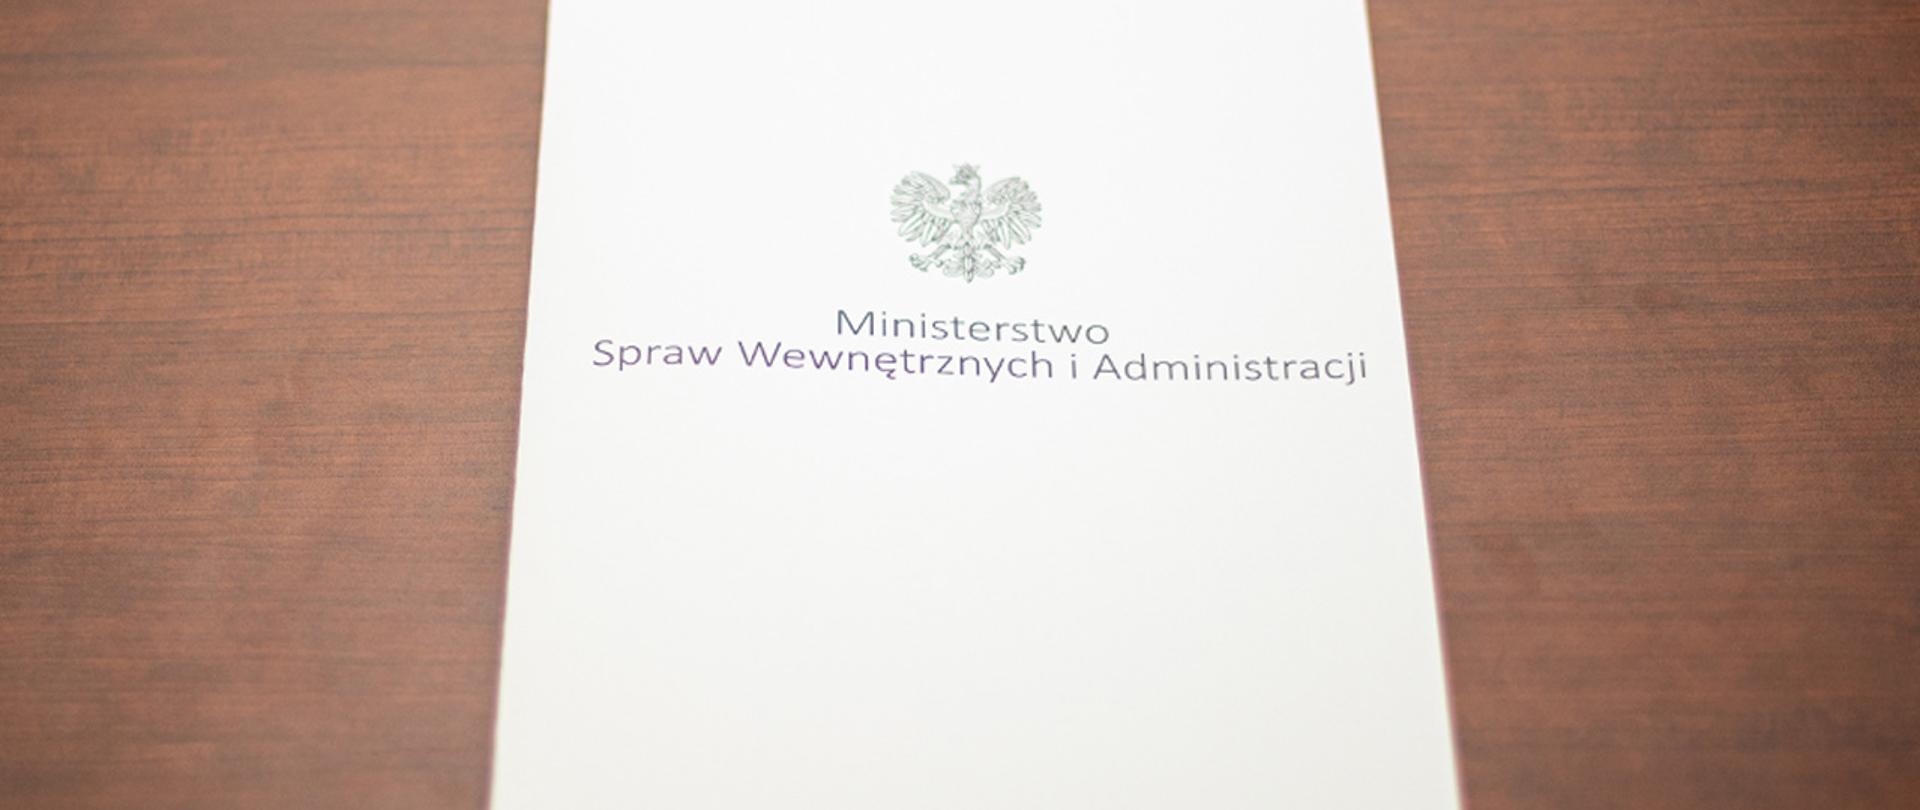 Na zdjęciu widać leżącą teczkę z napisem "Ministerstwo Spraw Wewnętrznych i Administracji" i orłem z godła narodowego.